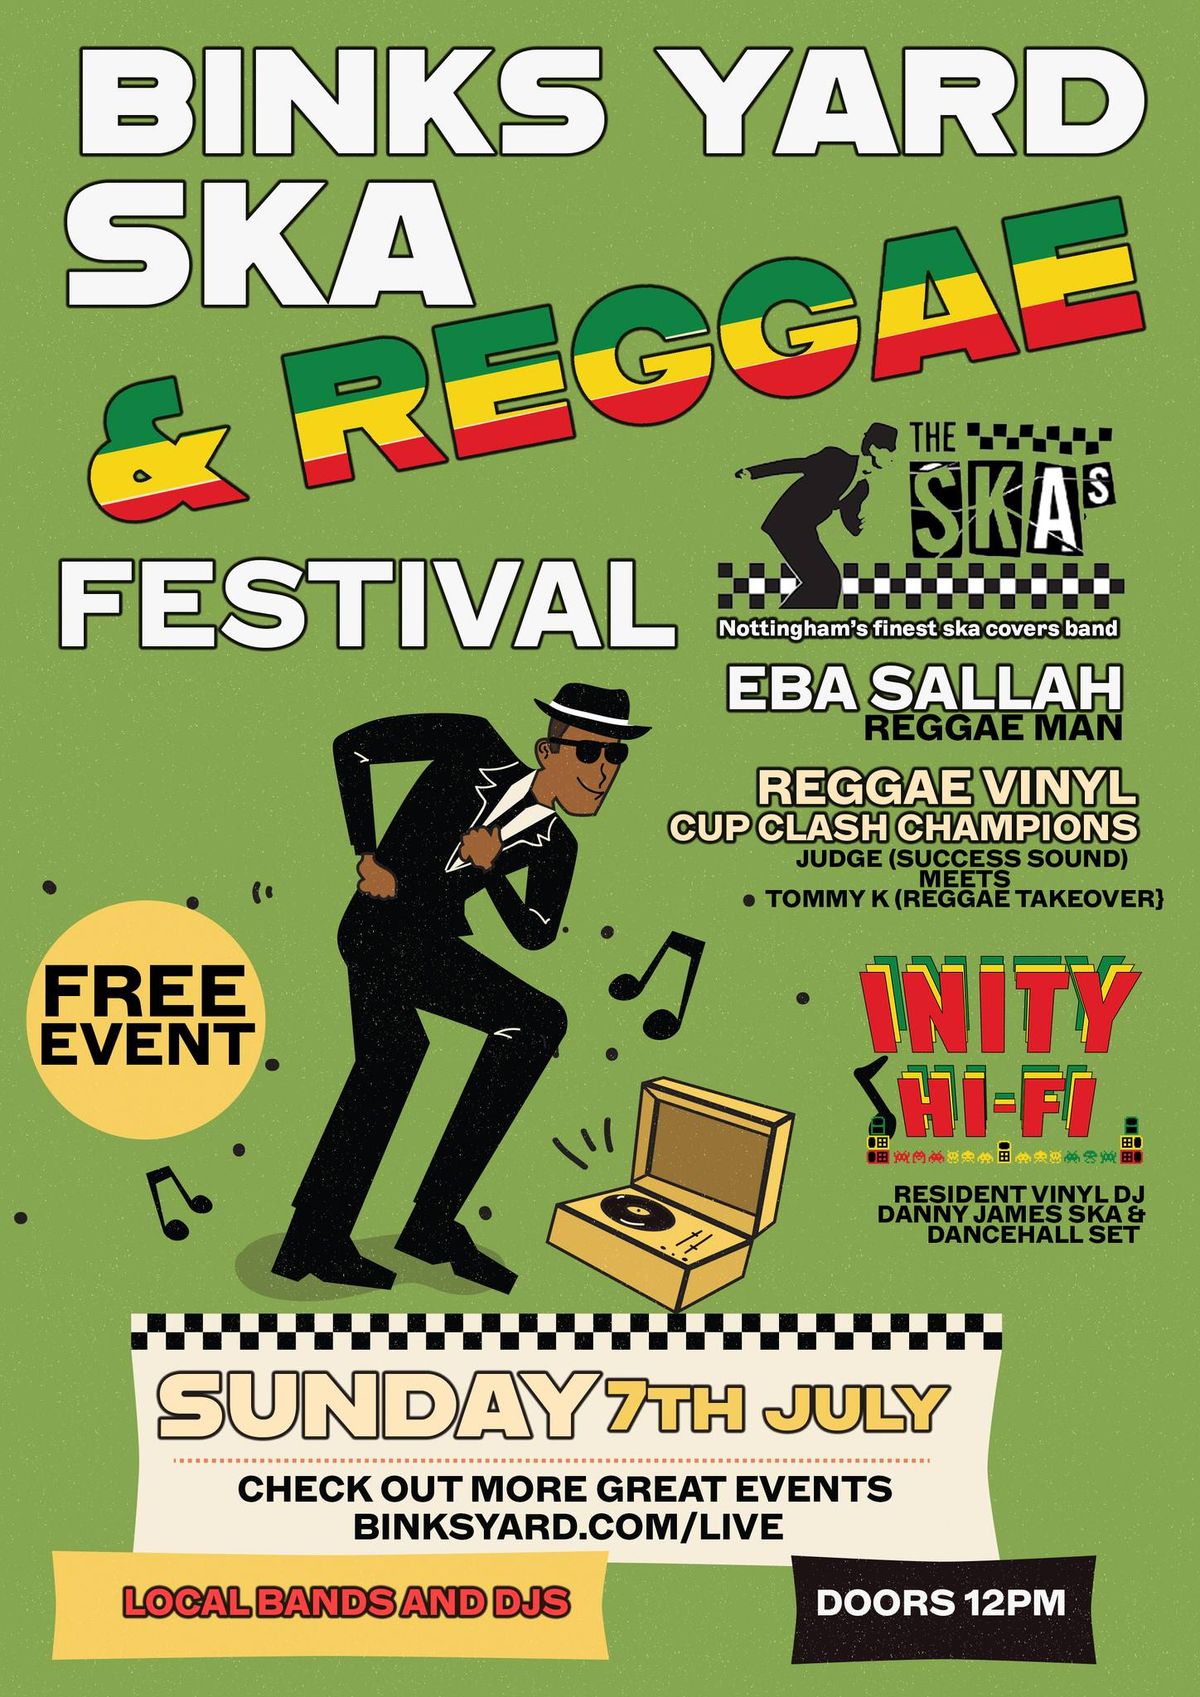 SKA & Reggae